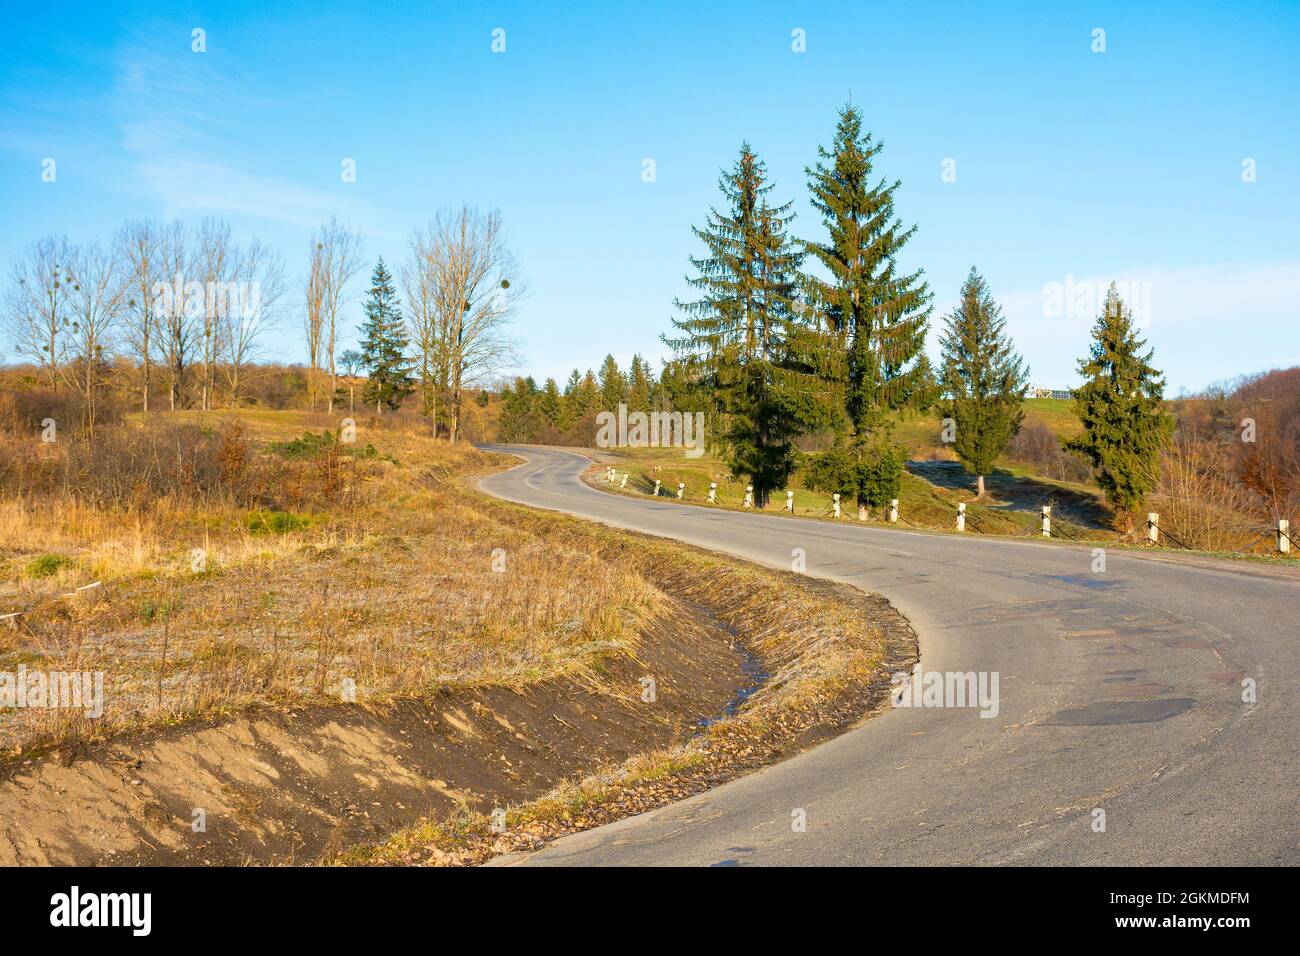 Pass durch karpaten Berge. Bäume entlang der Straße hinunter in das Tal von wolovets, ukraine. Sonniges Wetter am Vormittag mit Wolken auf der sk Stockfoto